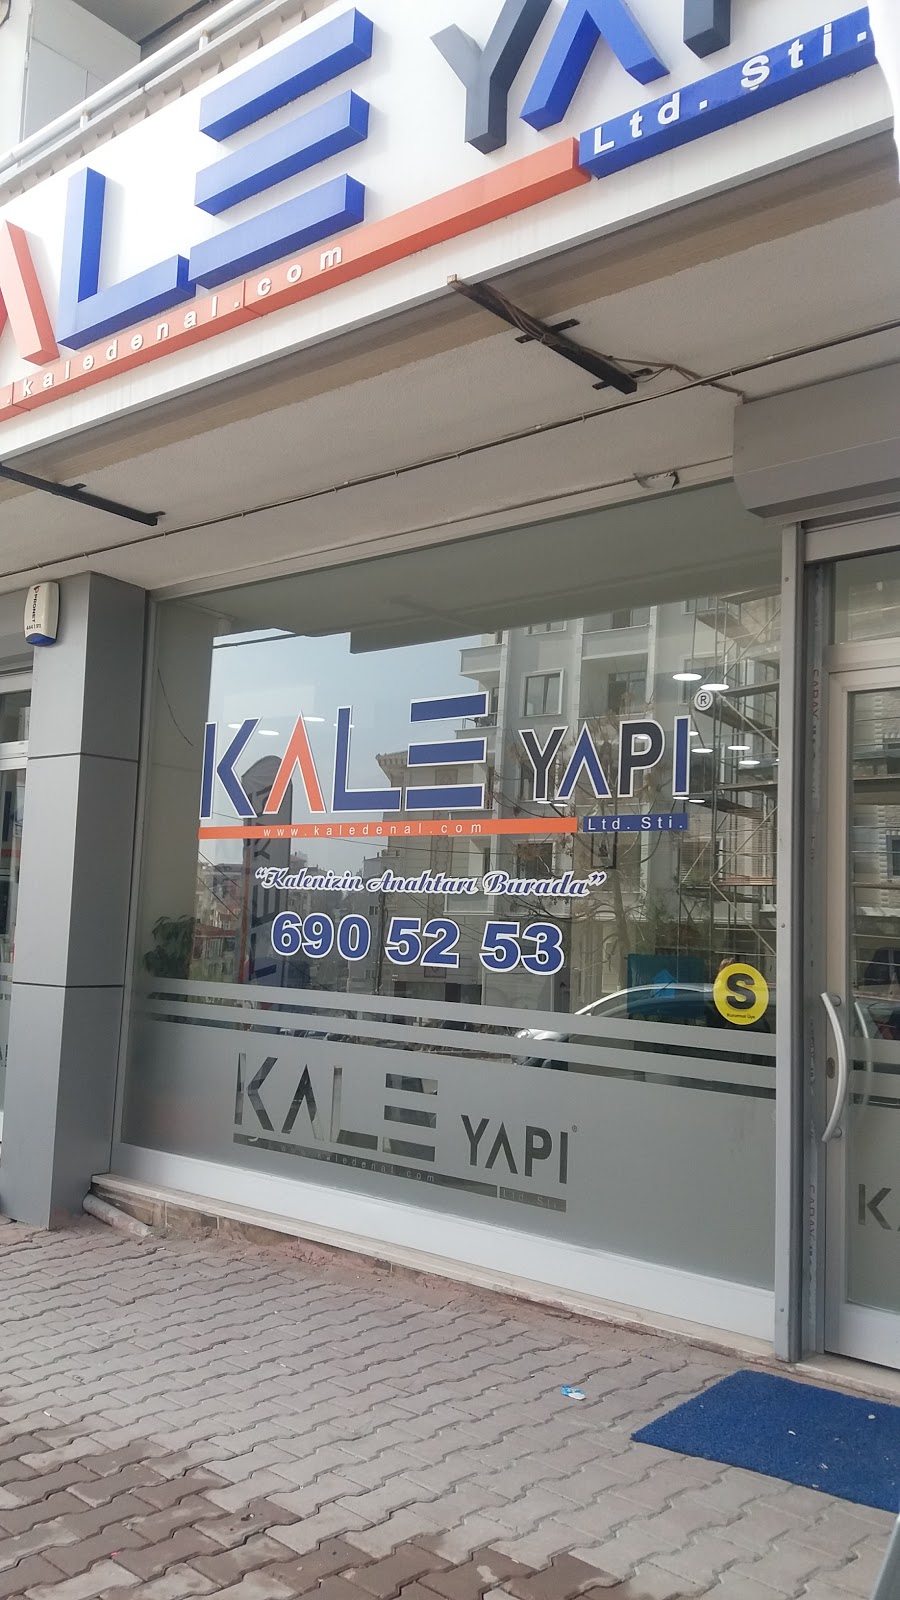 Kale Yap Ltd.ti.